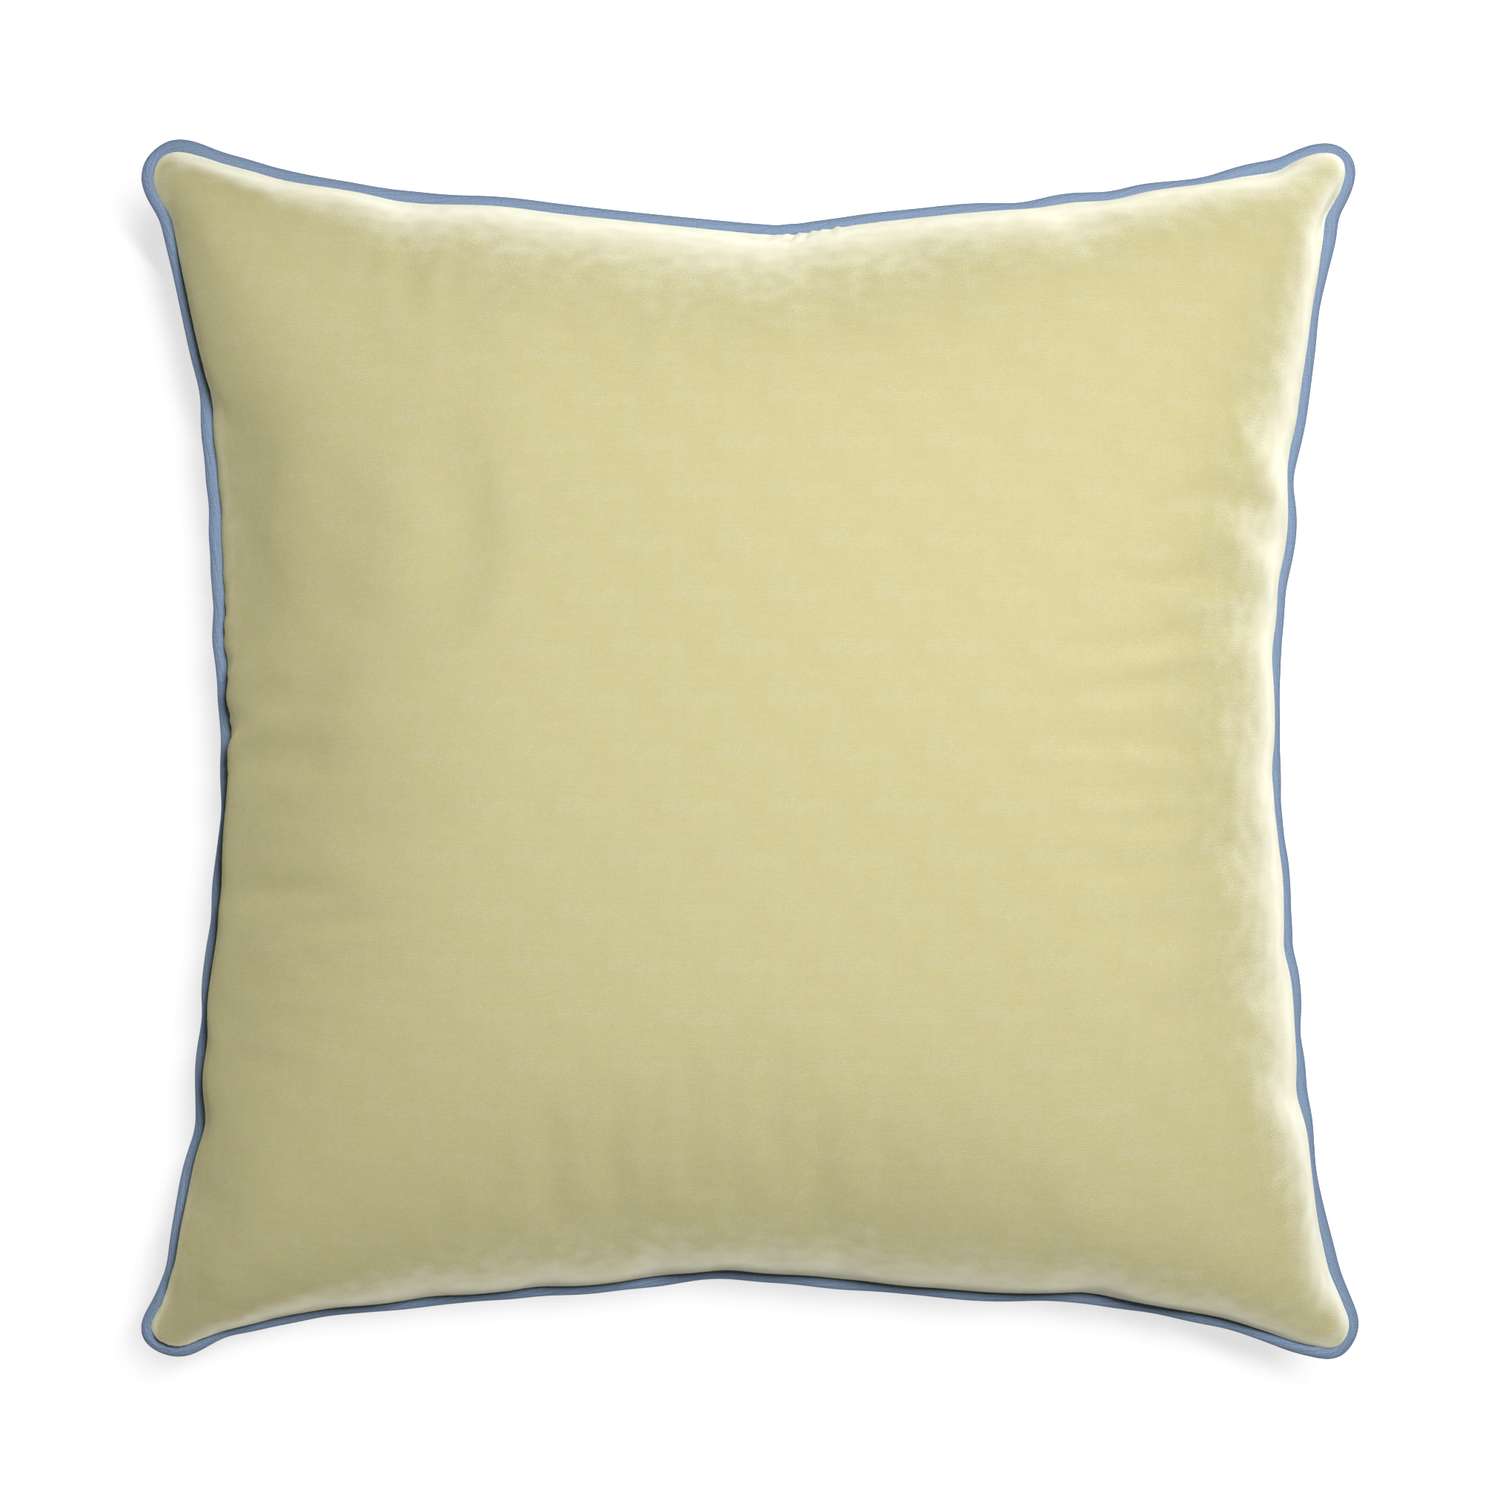 Euro-sham pear velvet custom pillow with sky piping on white background